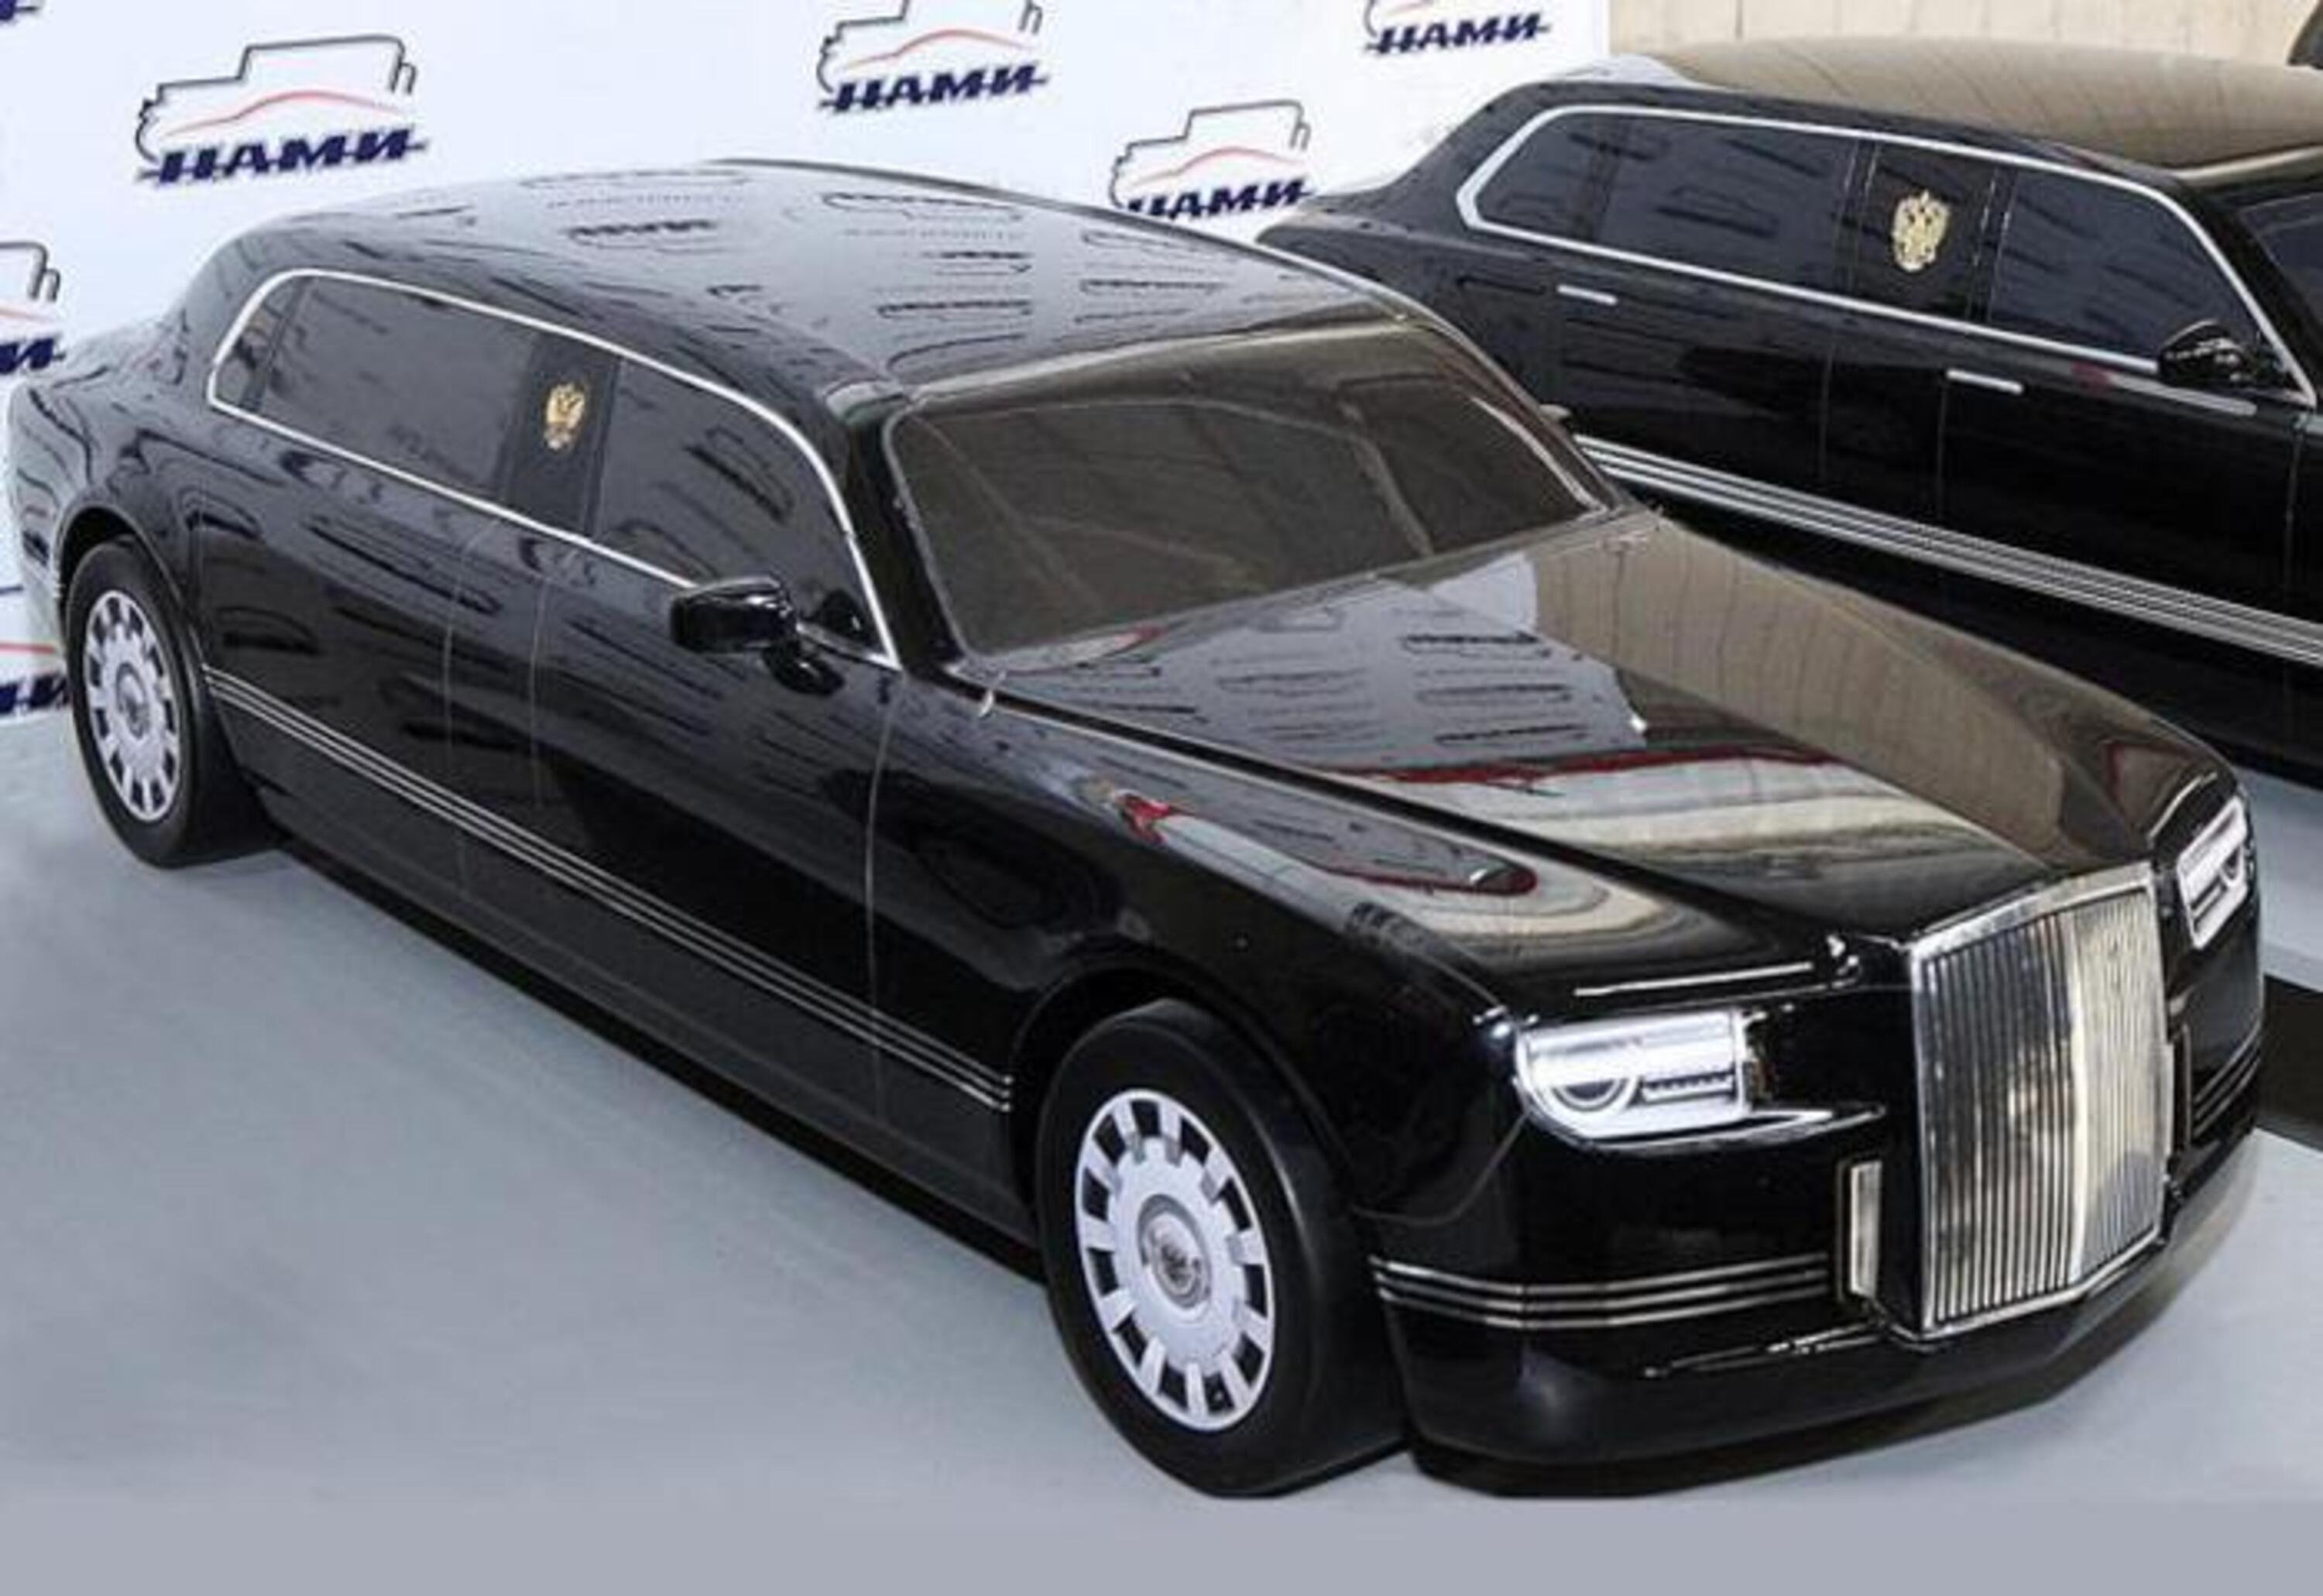 Kortezh limousine, la nuova auto presidenziale di Putin con V12 Porsche